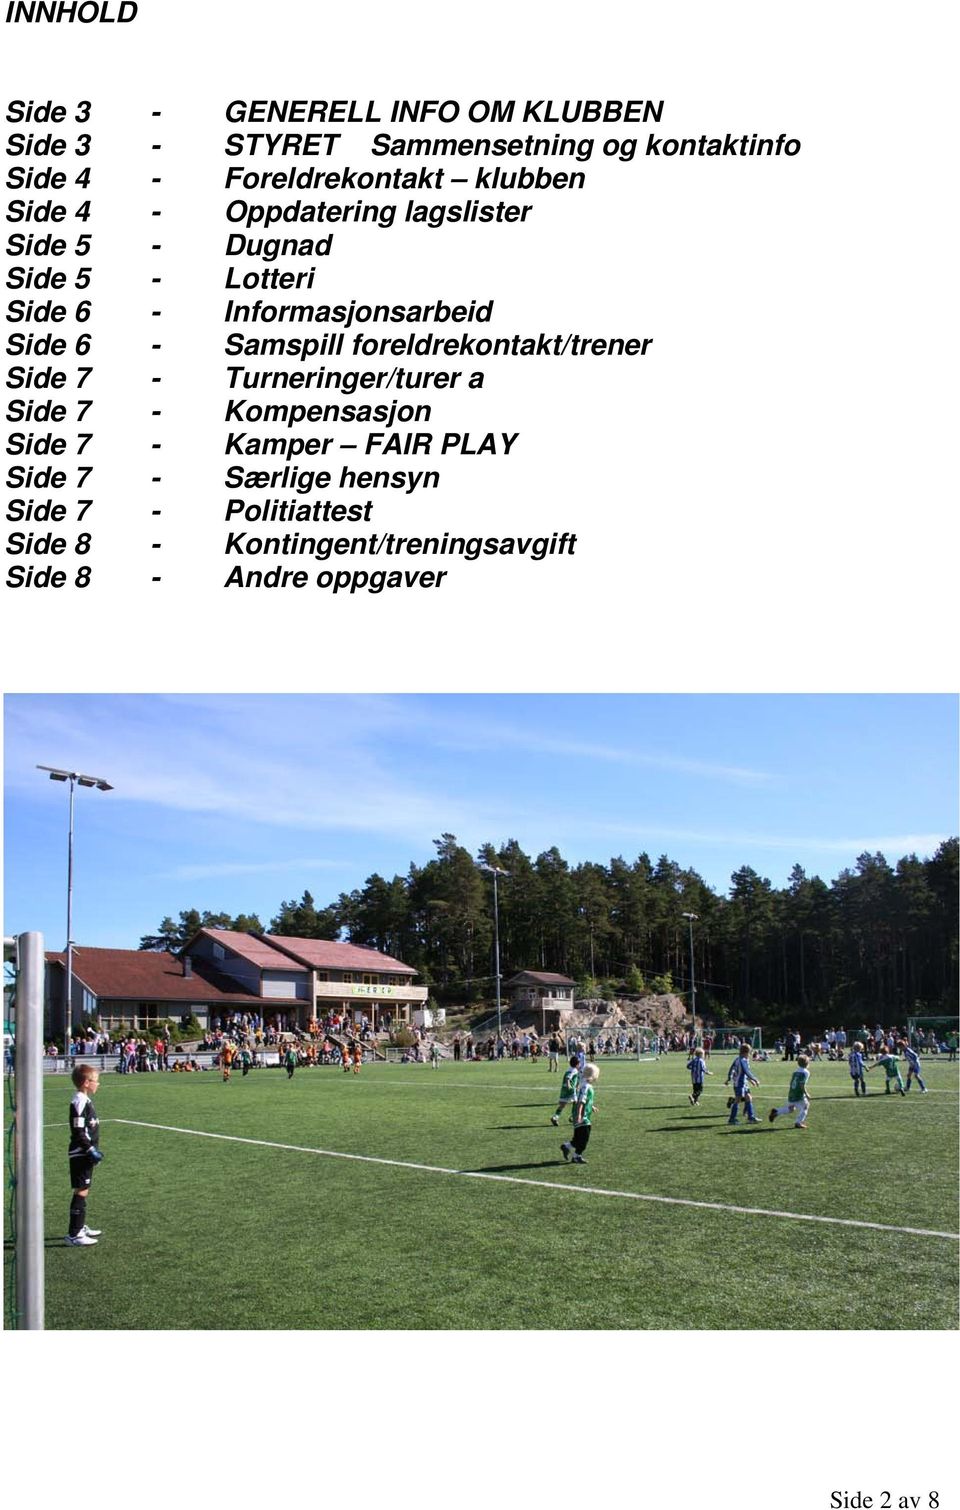 Samspill foreldrekontakt/trener Side 7 - Turneringer/turer a Side 7 - Kompensasjon Side 7 - Kamper FAIR PLAY